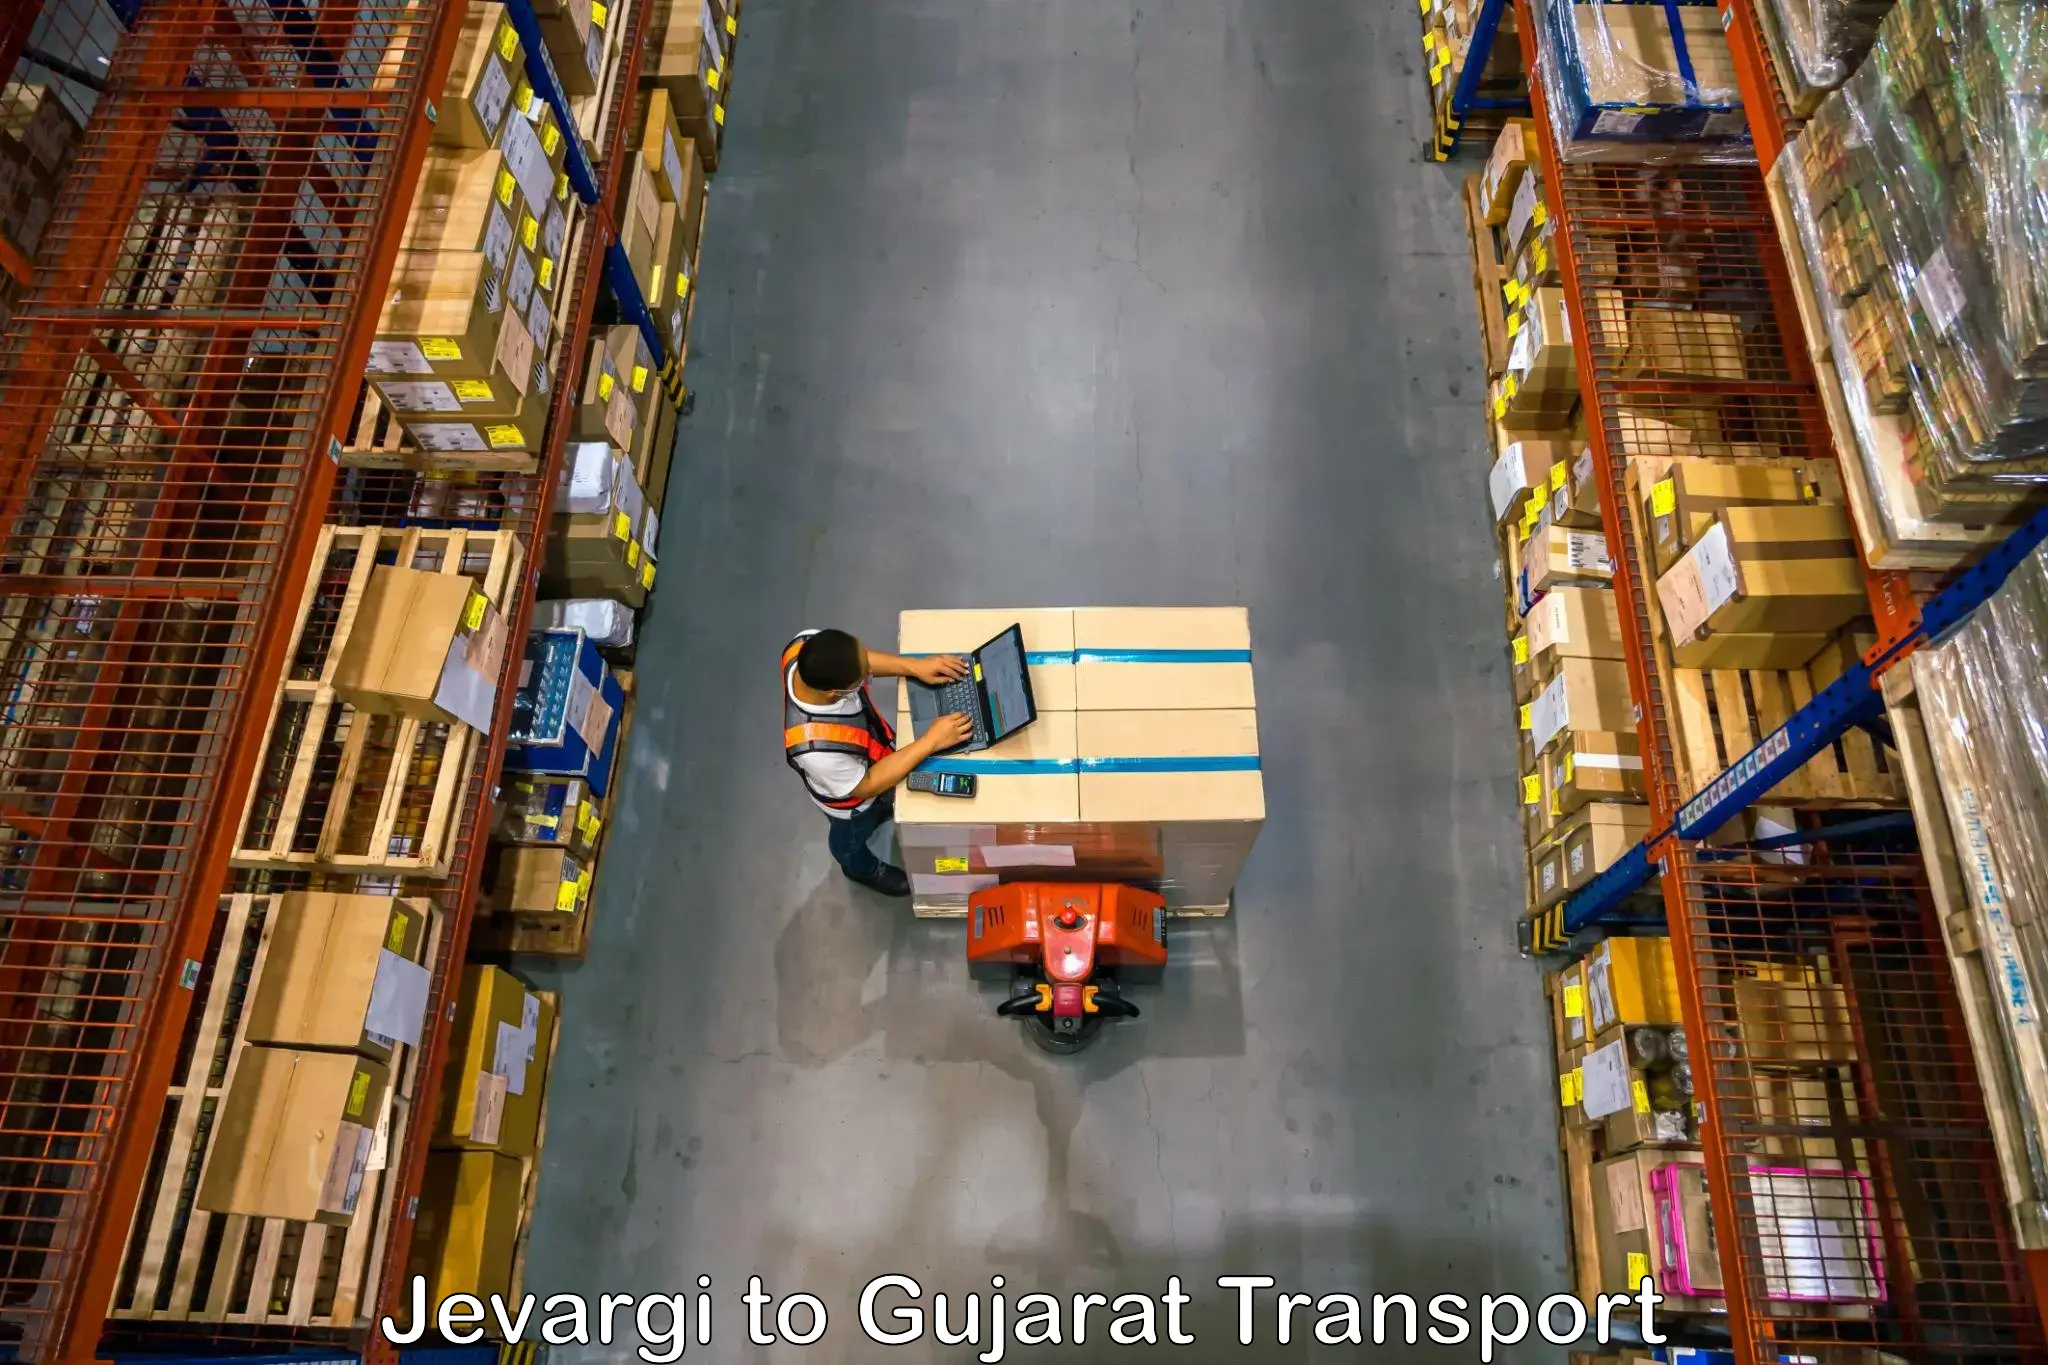 Road transport online services Jevargi to IIIT Surat